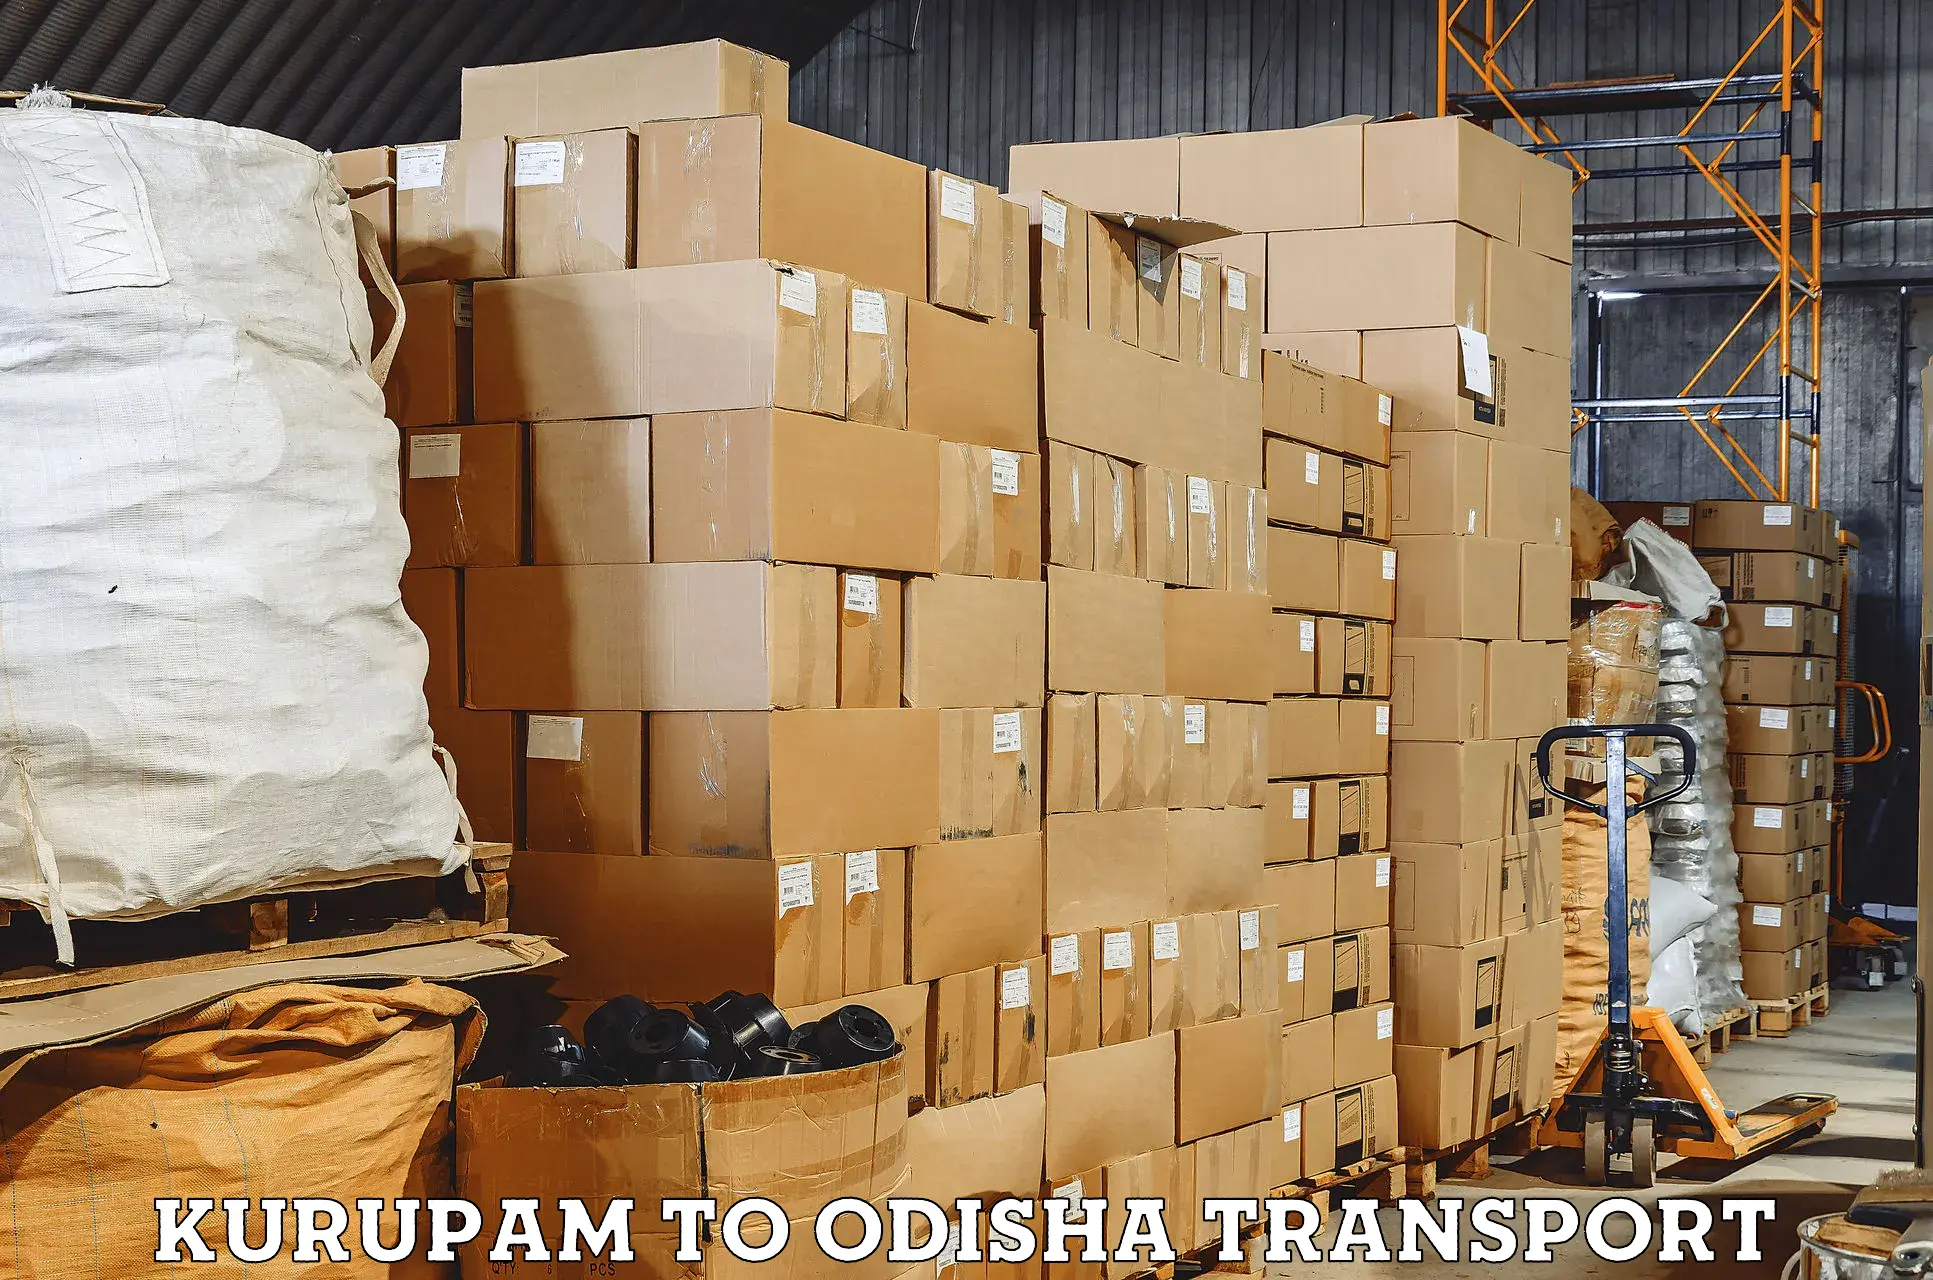 Vehicle courier services Kurupam to Dukura